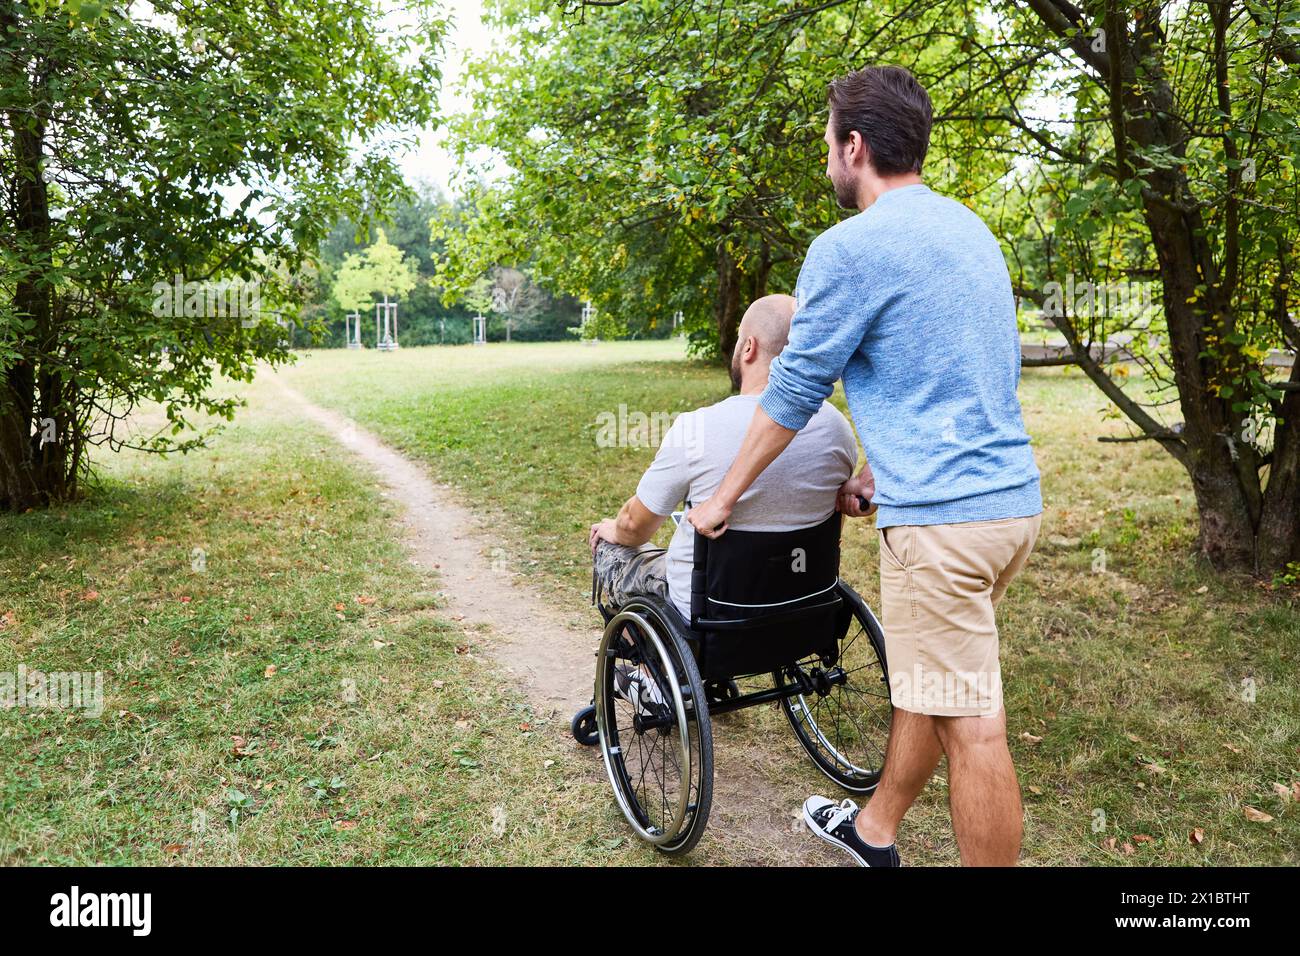 Ein ruhiger Moment der Freundschaft und Hilfe in einem üppigen Park, in dem ein Mann einem anderen hilft, der einen Rollstuhl benutzt, um einen unbefestigten Weg zu navigieren. Stockfoto